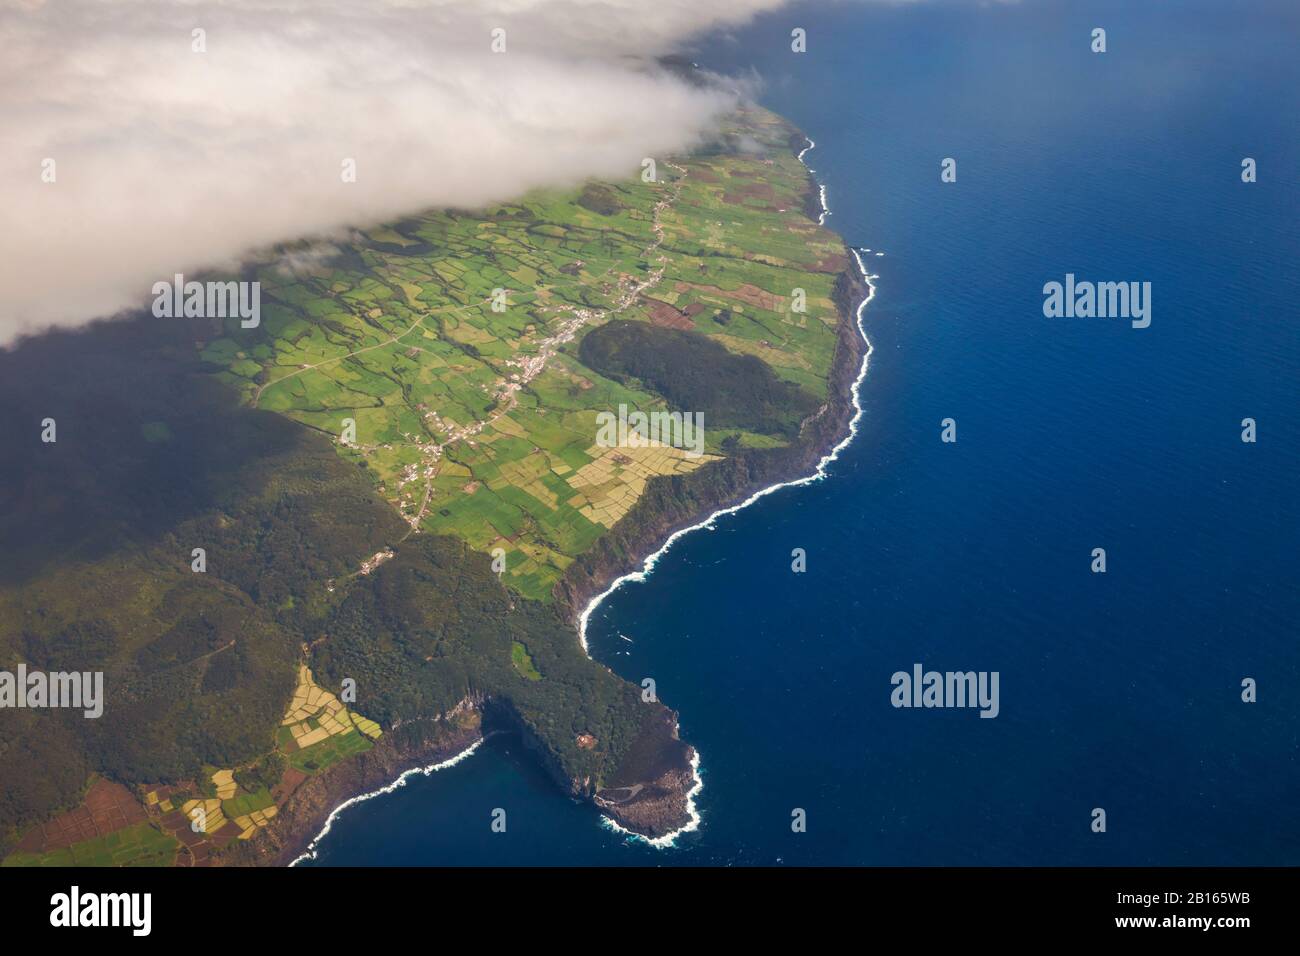 Vue aérienne sur les falaises de l'île de Terceira, Terceira, Açores, Portugal, péninsule ibérique, Europe occidentale Banque D'Images